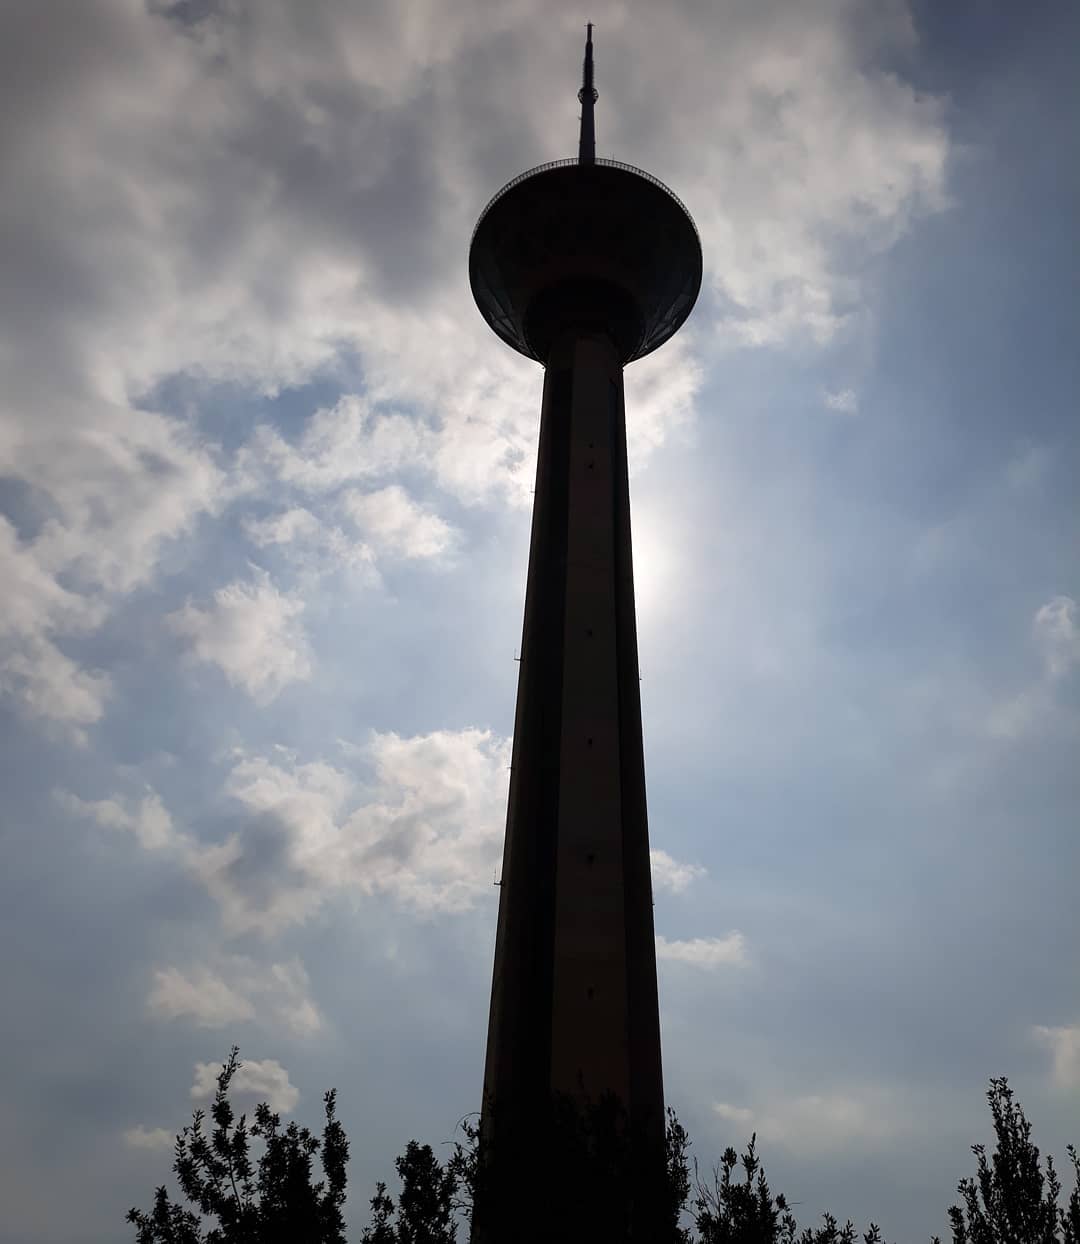 Milad tower in Tehran